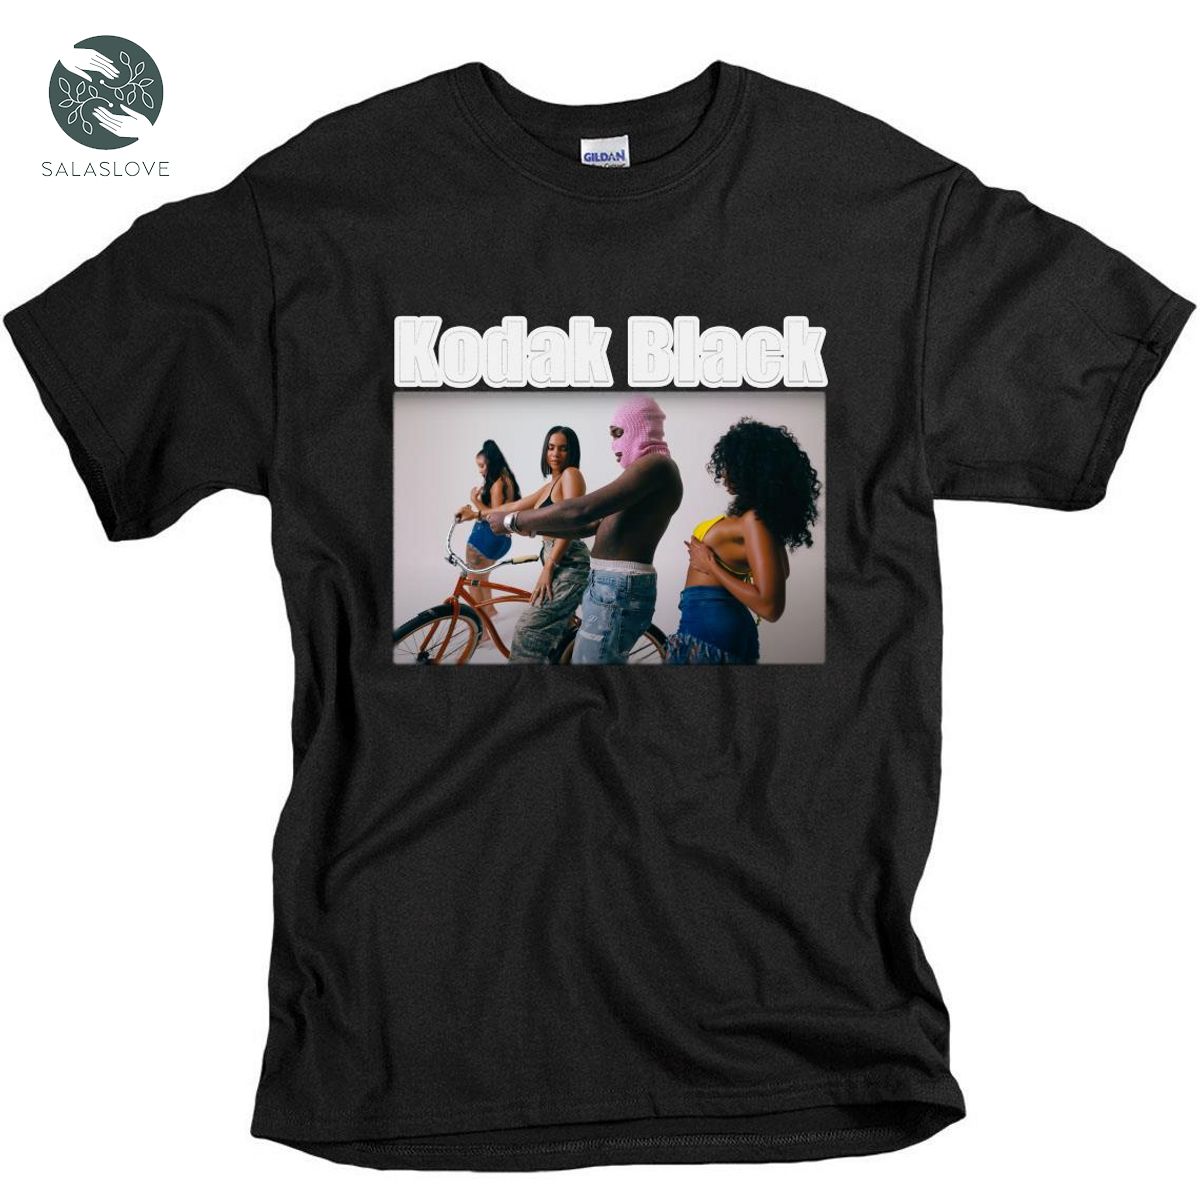 Walk - Kodak Black New Release Music Hoodie